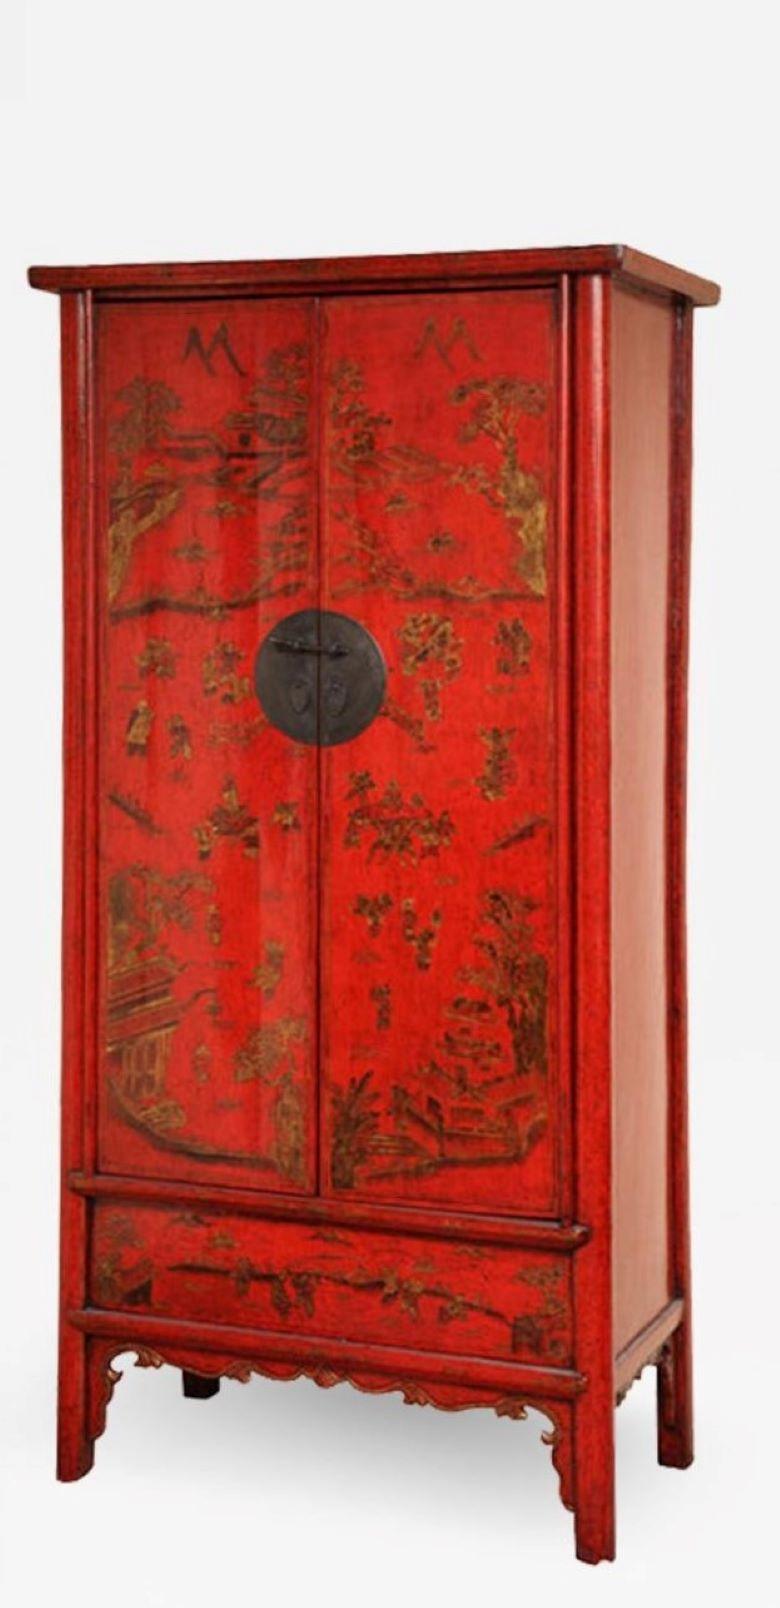 Sehr attraktive, rot lackierte chinesische zweitürige Schränke aus dem 19. Jahrhundert mit Chinoiserie-Dekoration. Innenausstattung mit Regal, zwei Schubladen und verdecktem Fach. Dieses wichtige Stück bringt Farbe und Höhe in eine Einrichtung.